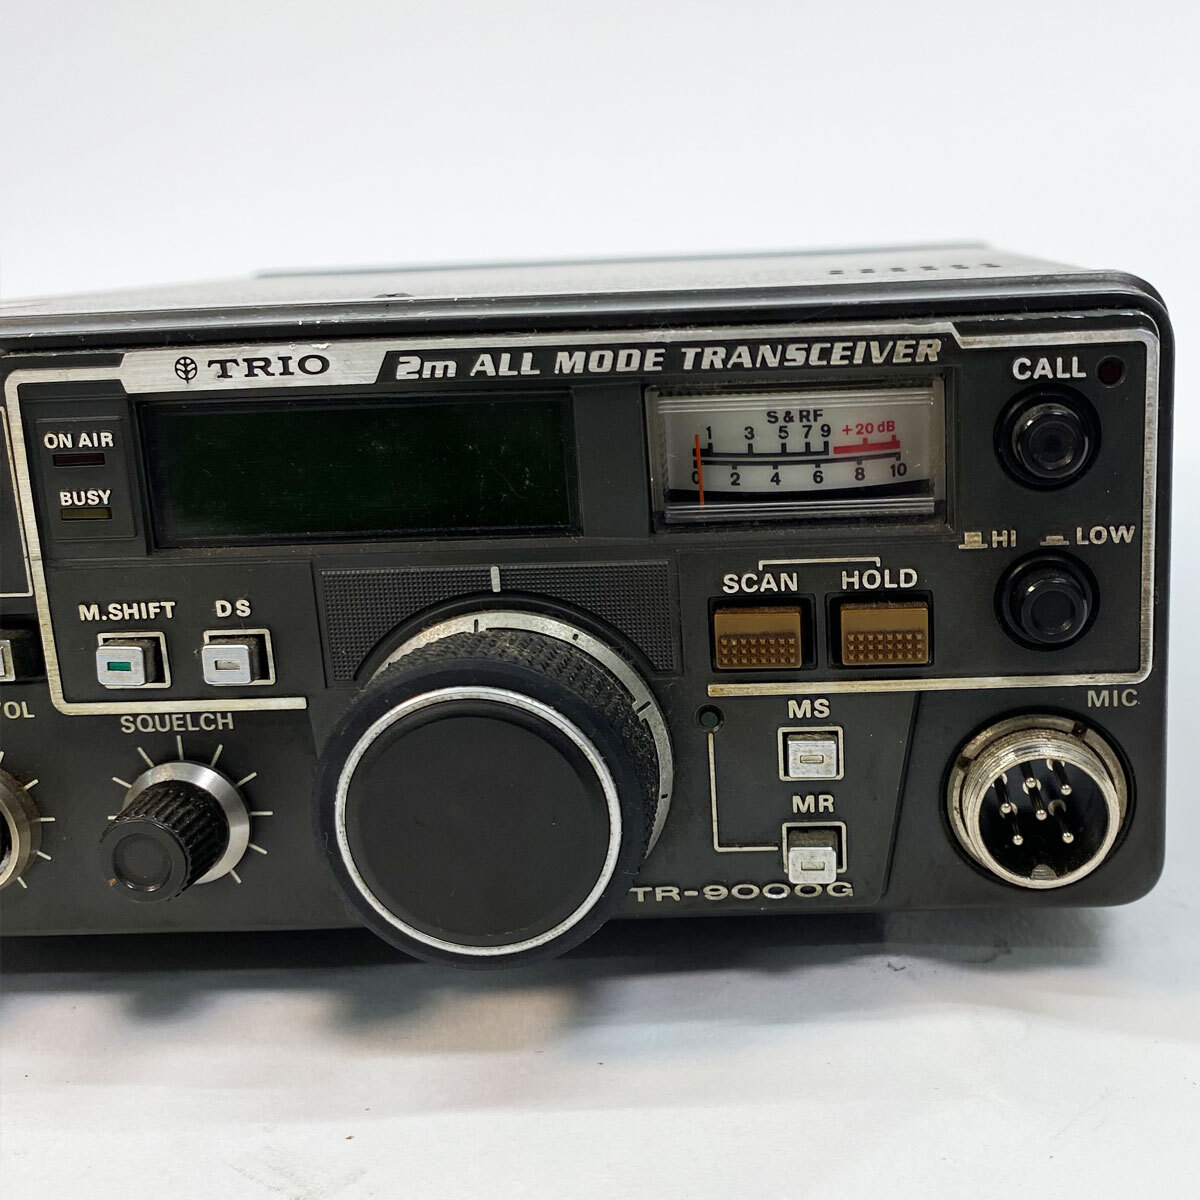  Trio TRIO 2m ALL TRANSCEIVER приемопередатчик TR-9000G рация радиолюбительская связь текущее состояние товар б/у товар nn0101